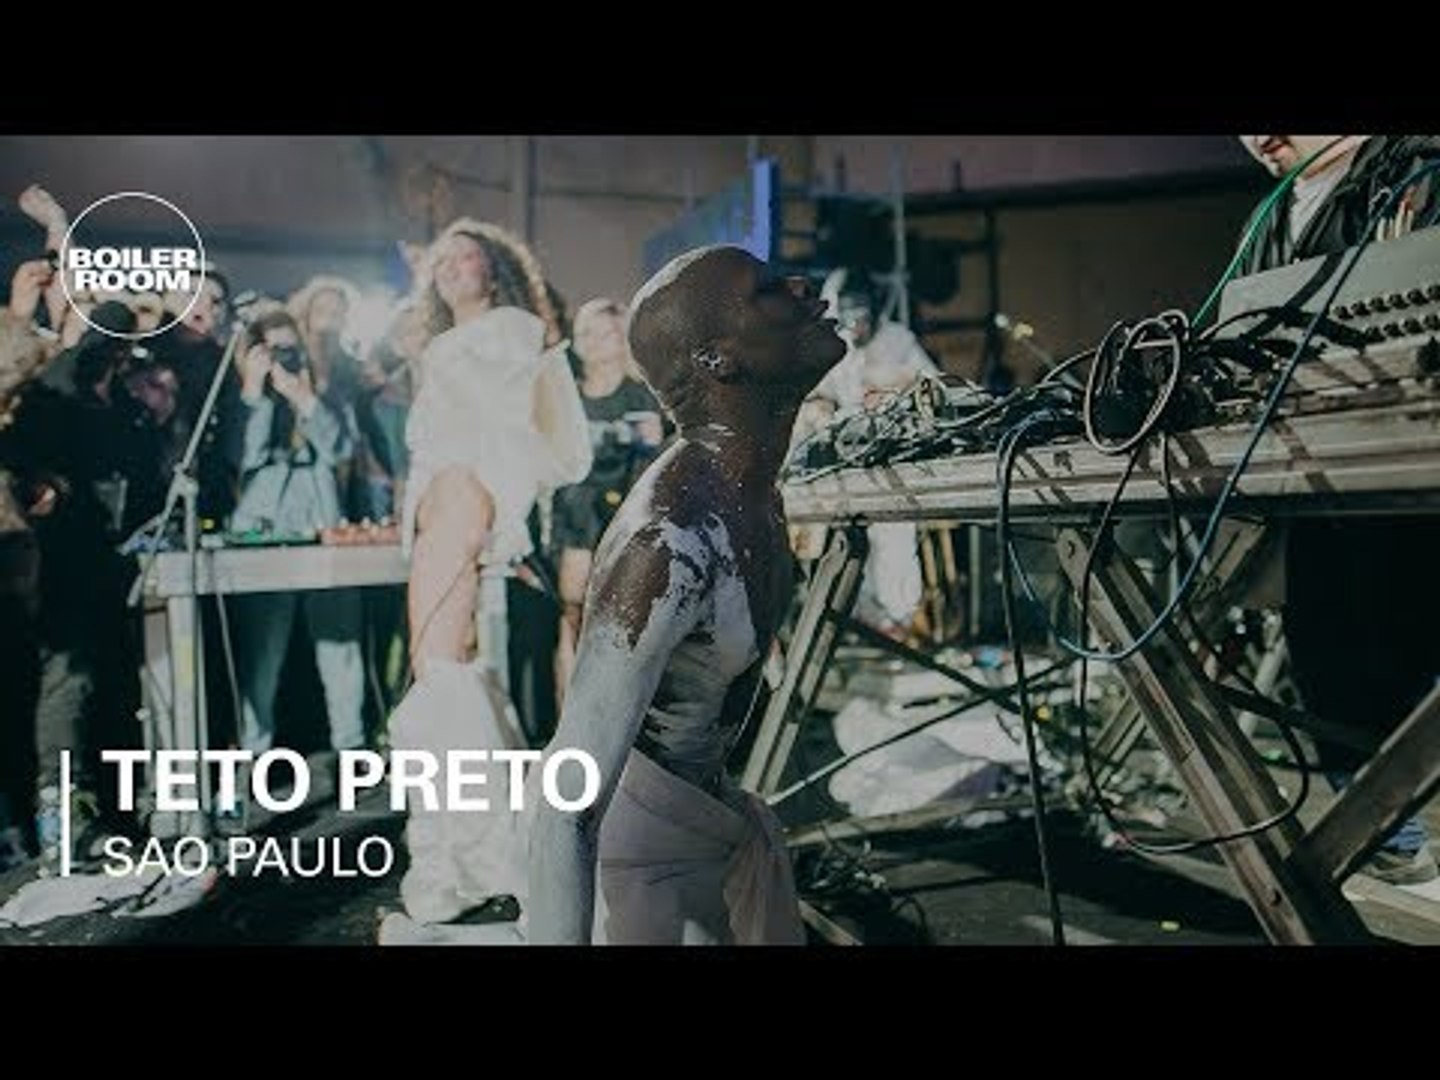 Teto Preto Live Show  Boiler Room x Ballantine's True Music